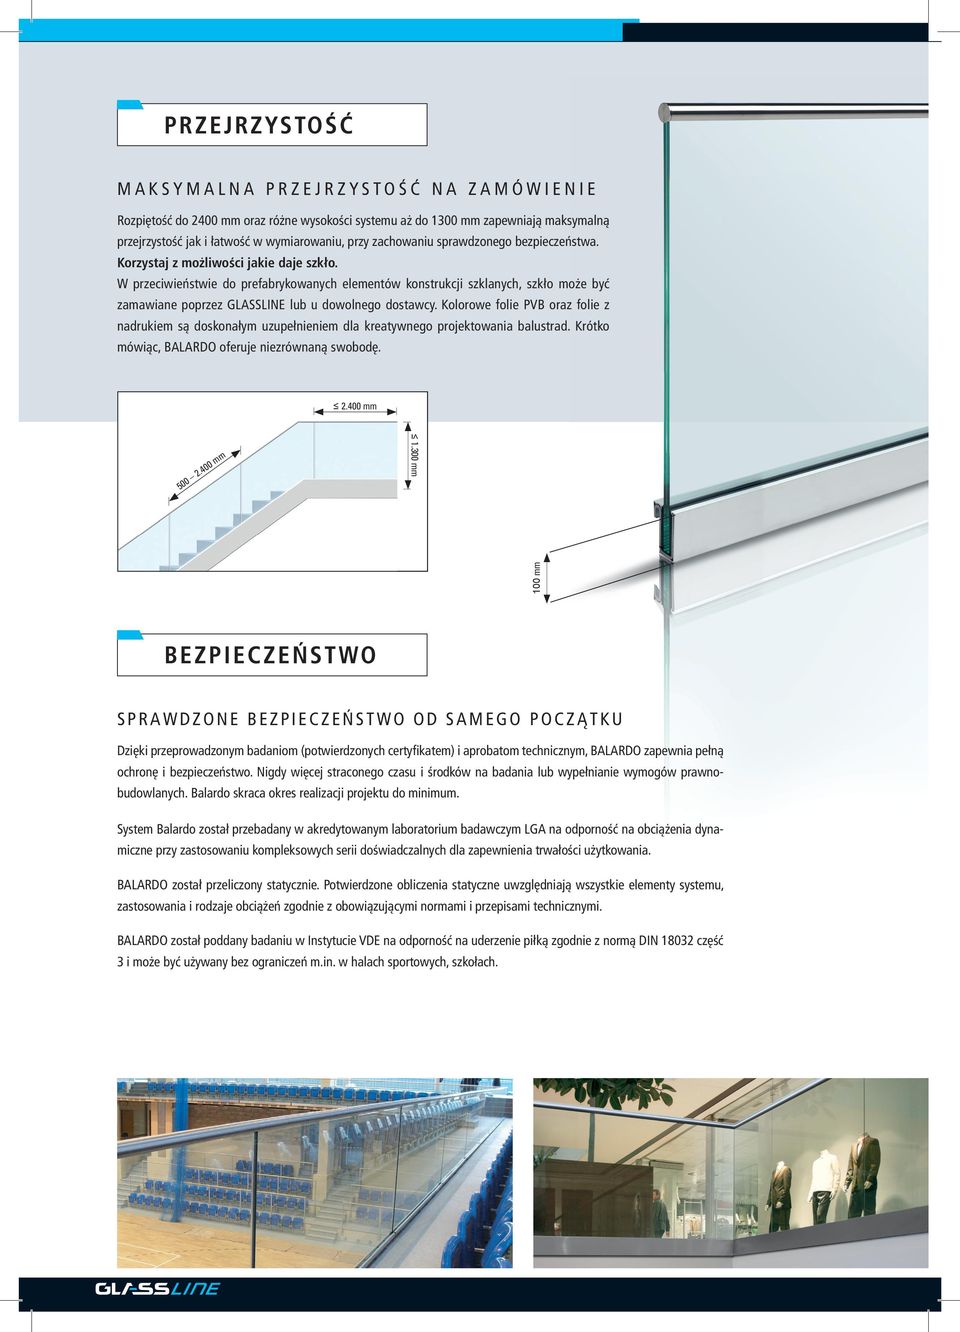 W przeciwieństwie do prefabrykowanych elementów konstrukcji szklanych, szkło może być zamawiane poprzez GLASSLINE lub u dowolnego dostawcy.